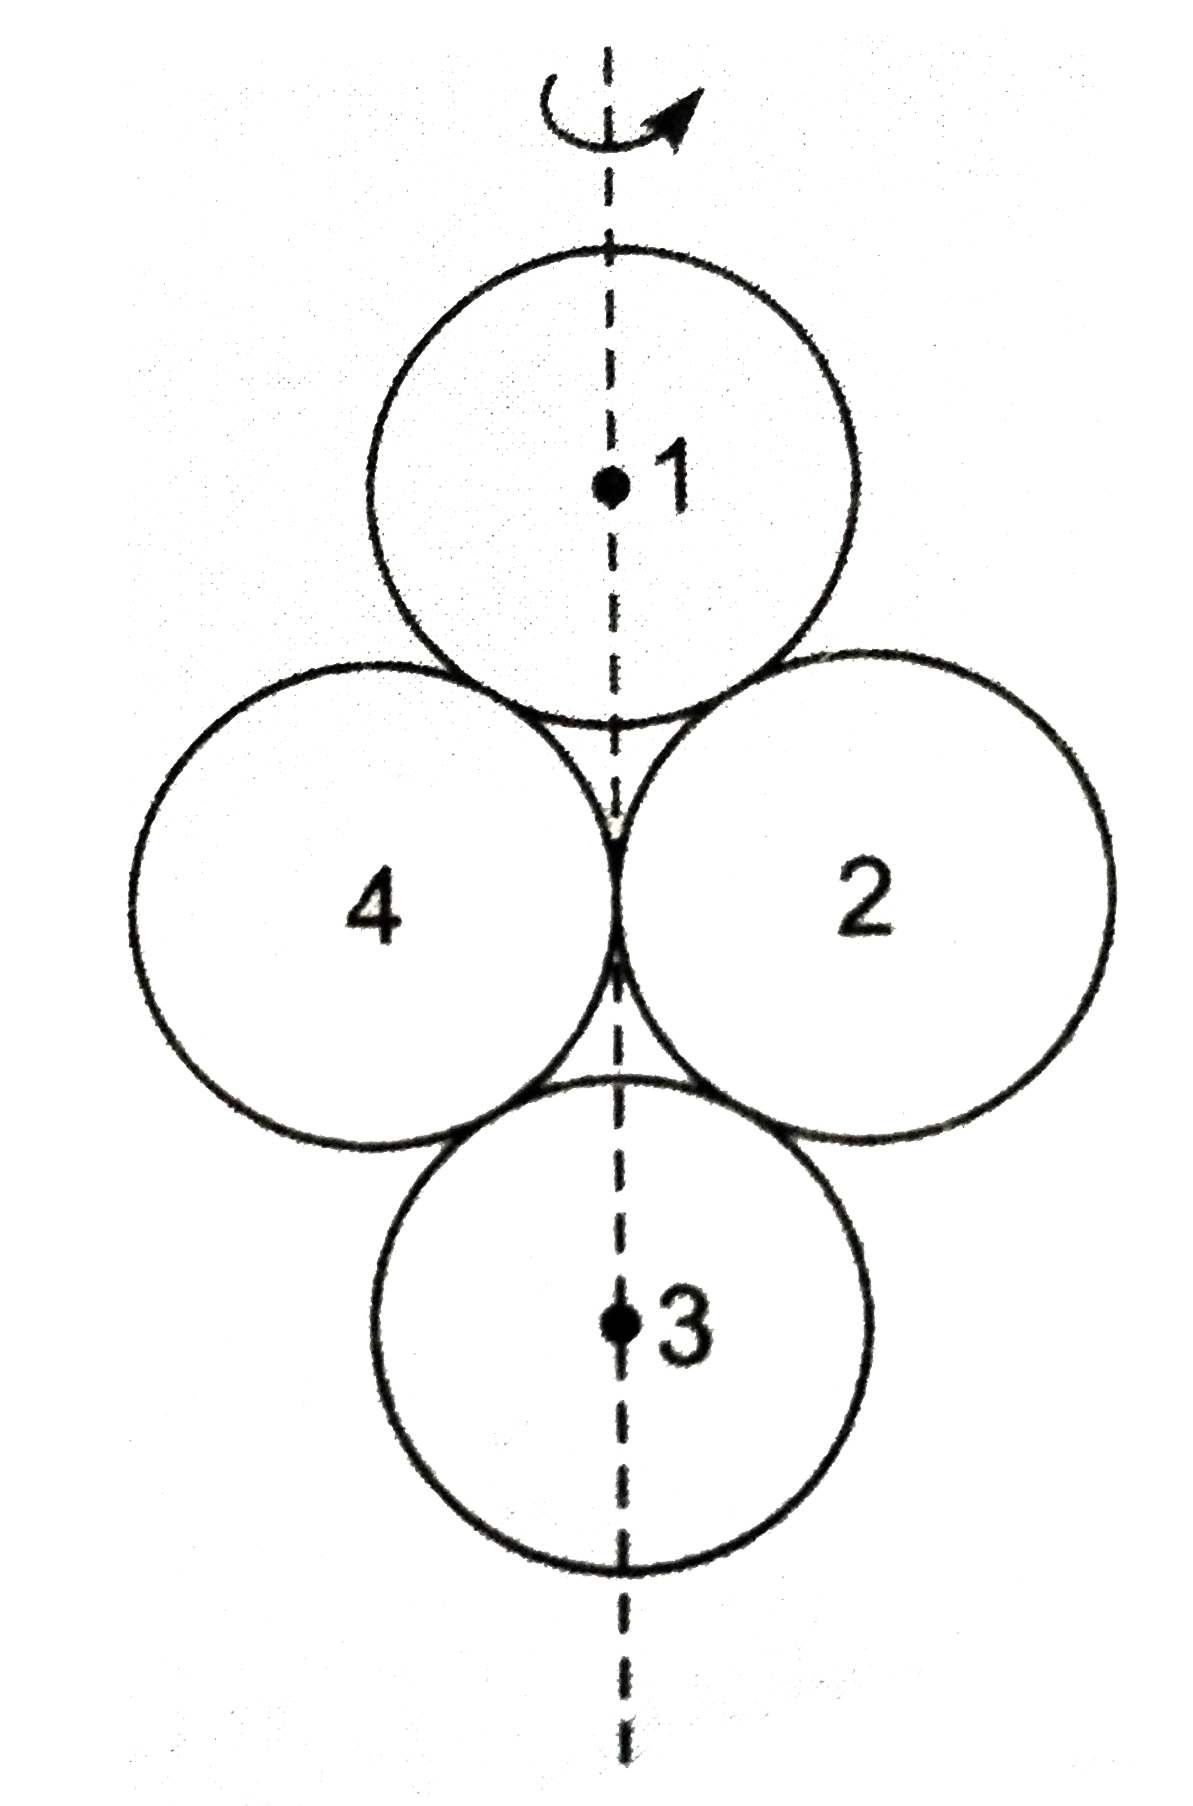 M द्रव्यमान तथा R त्रिज्या के चार समान गोले 1, 2 3, 4 किसी तल पर संलग्न चित्र के अनुसार परस्पर स्पर्श करते हुए रखे हैं। गोला 1 व 3 के केन्द्रों को मिलाने वाली अक्ष के परितः निकाय का जड़त्व आघूर्ण ज्ञात कीजिये।